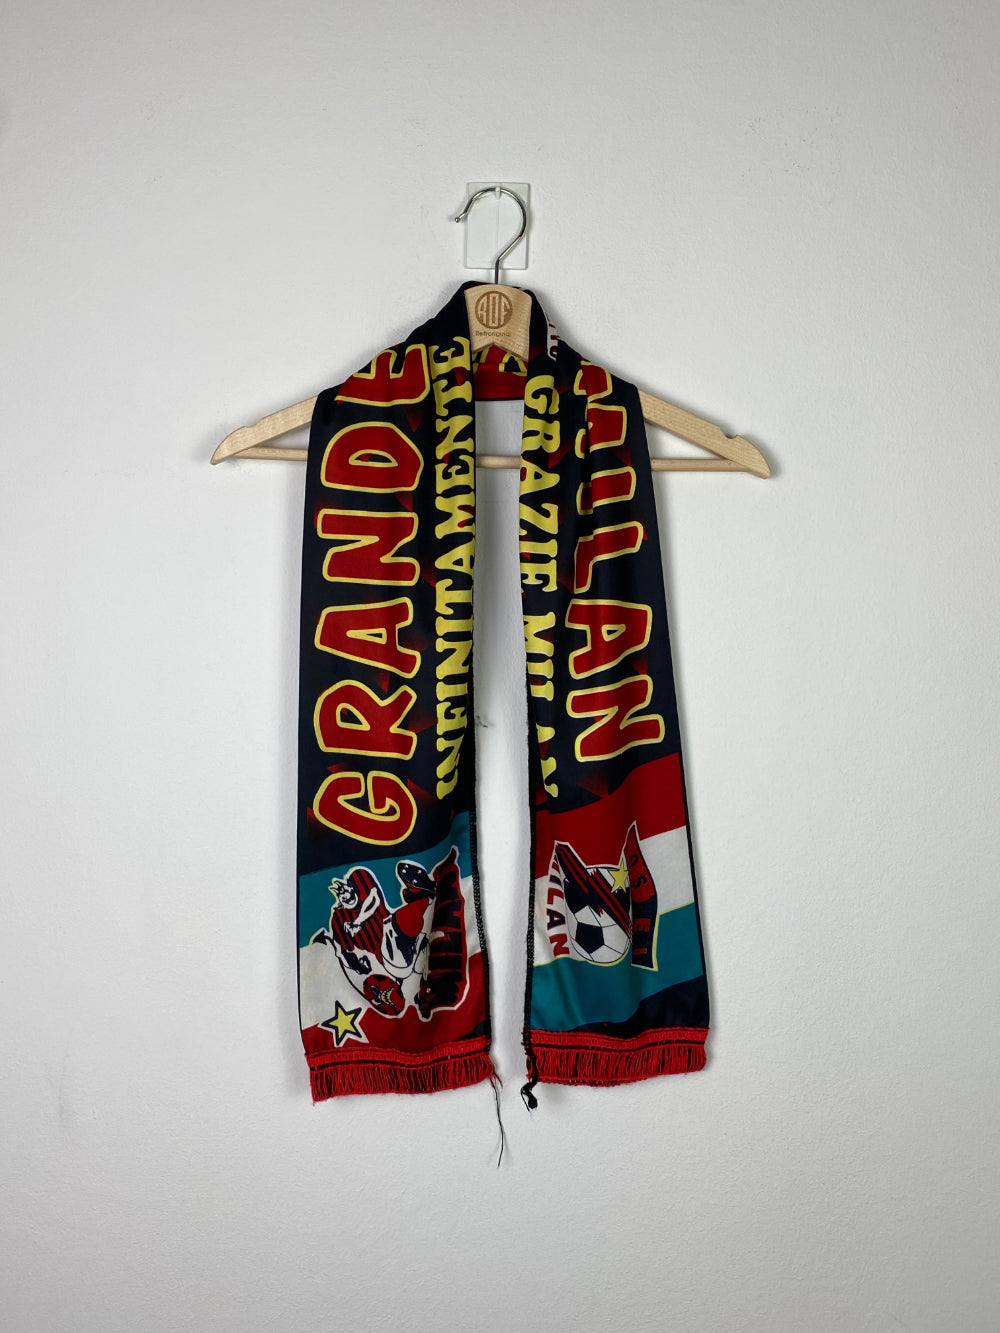 Original AC Milan scarf